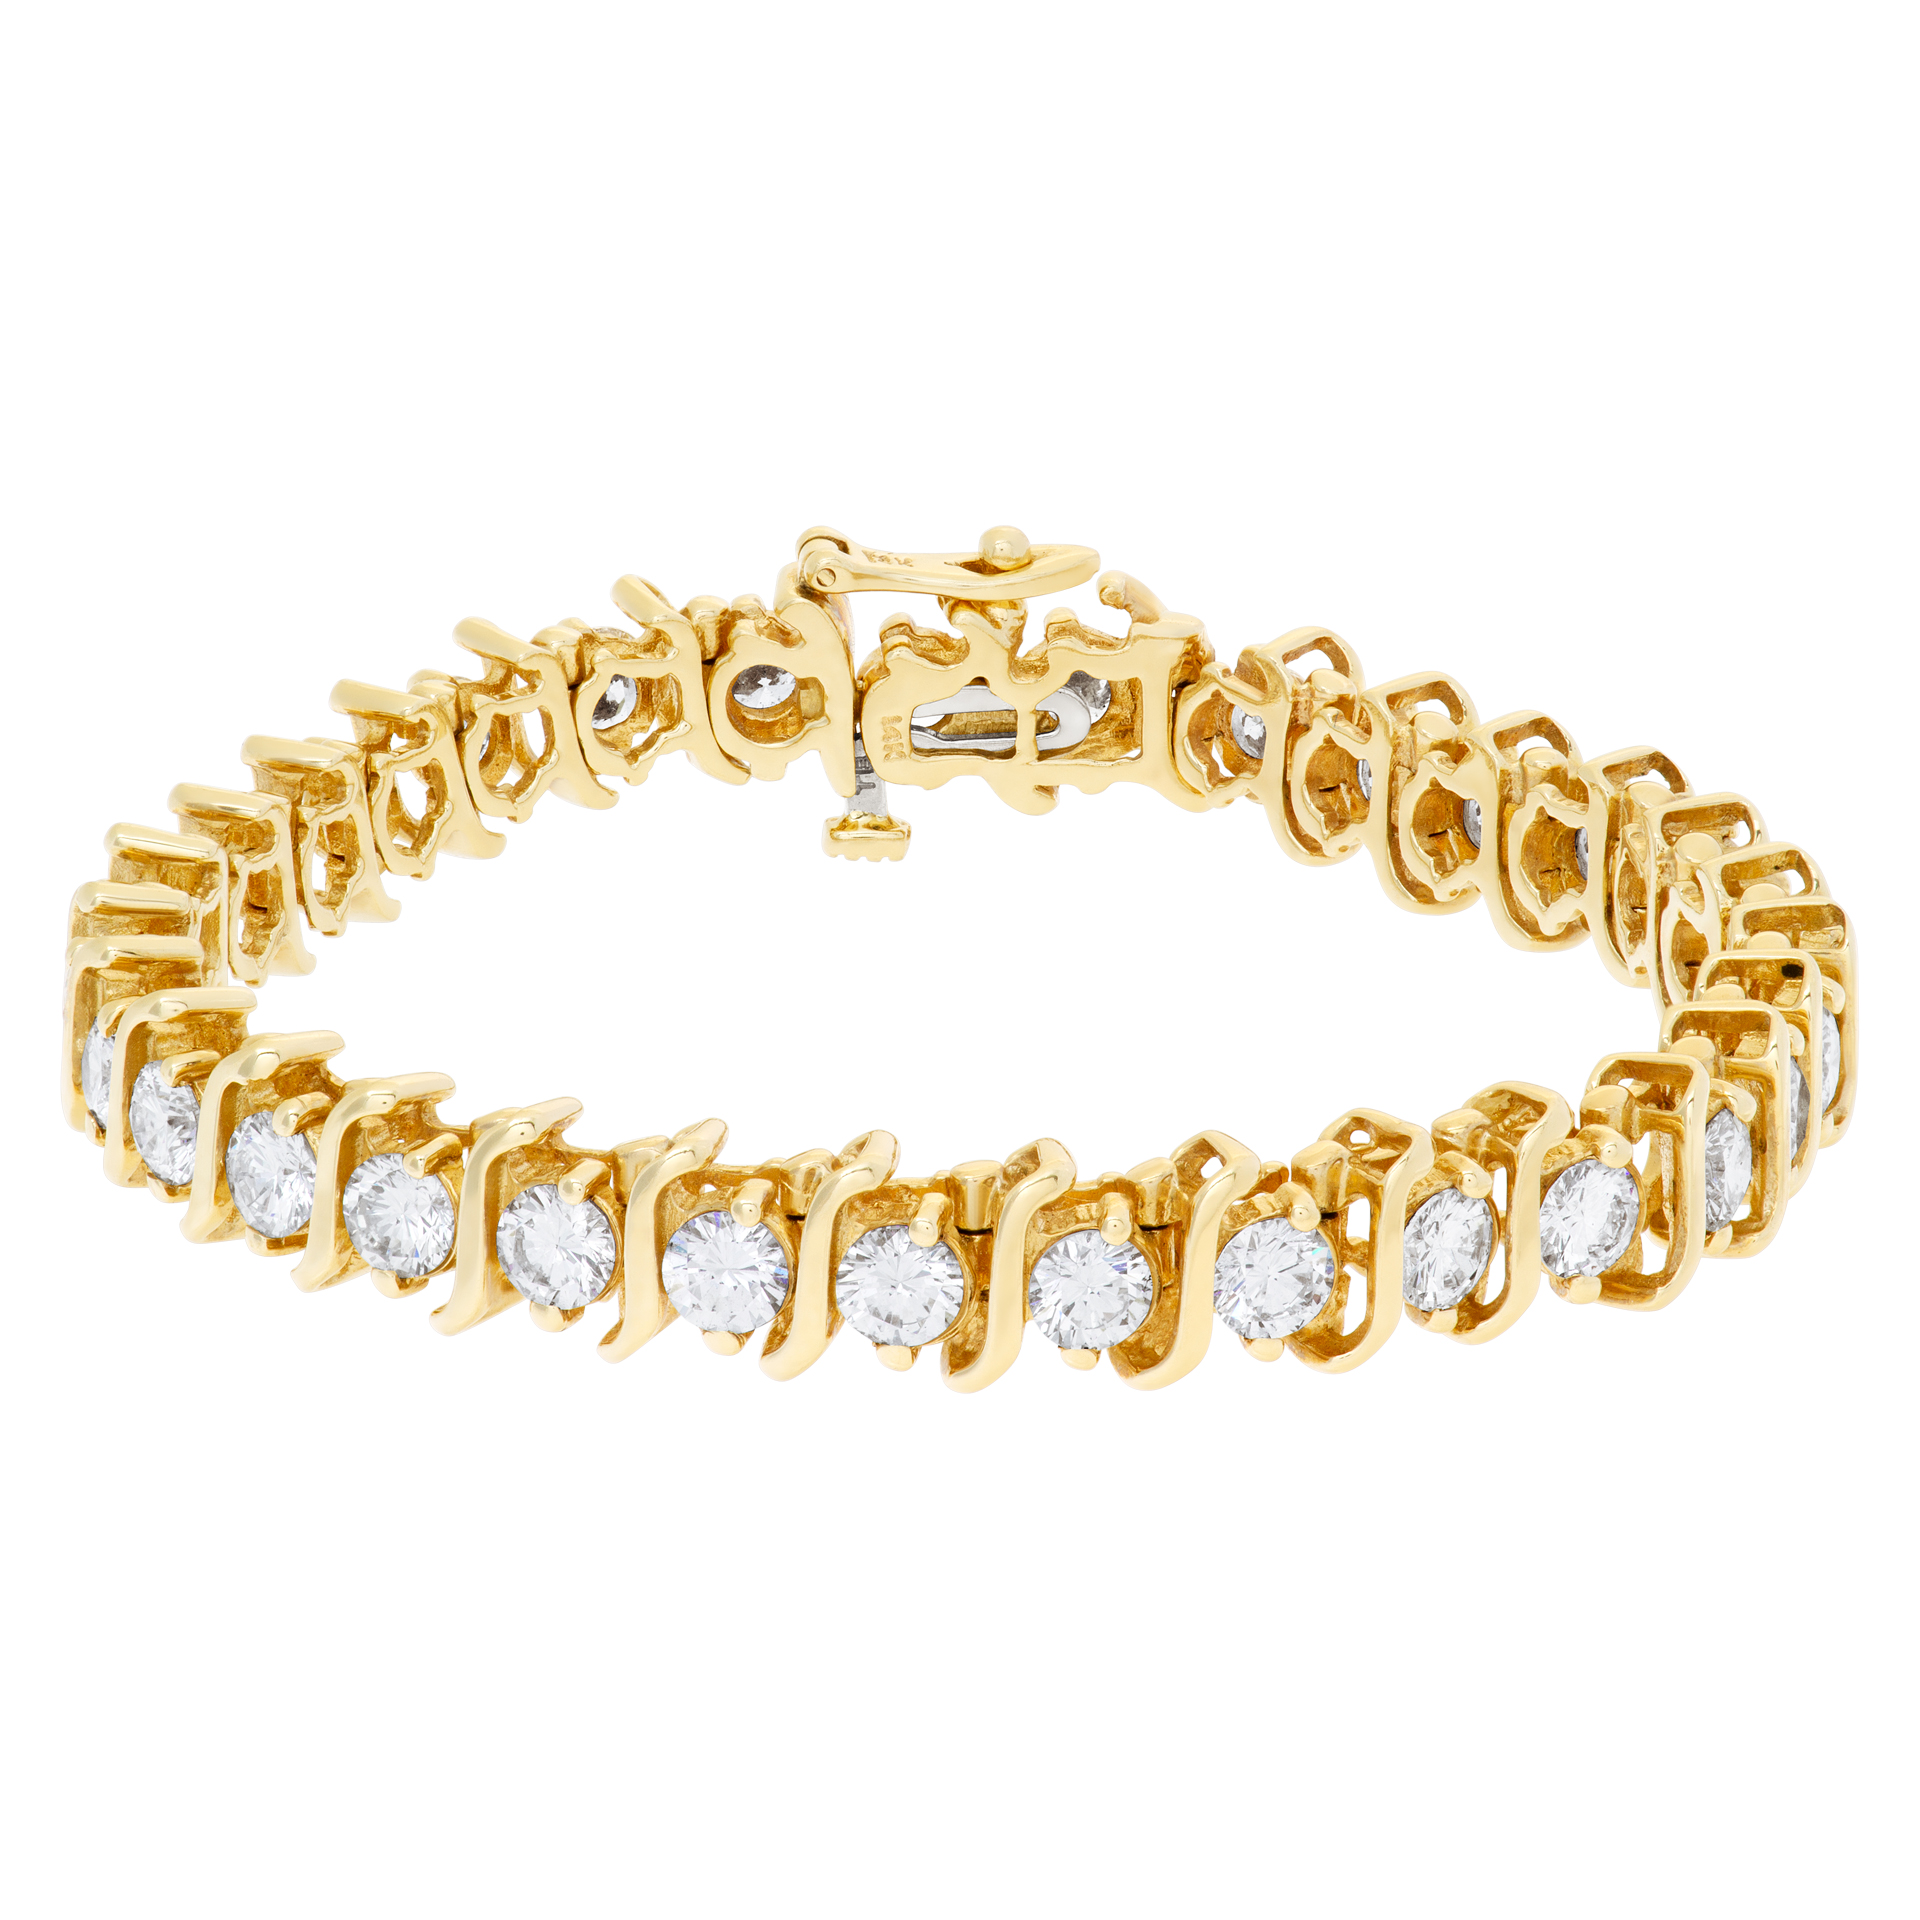 Diamond Tennis bracelet in 14k gold. 7.10 cts in diamonds (J-K color VS2/SI1 clarity)